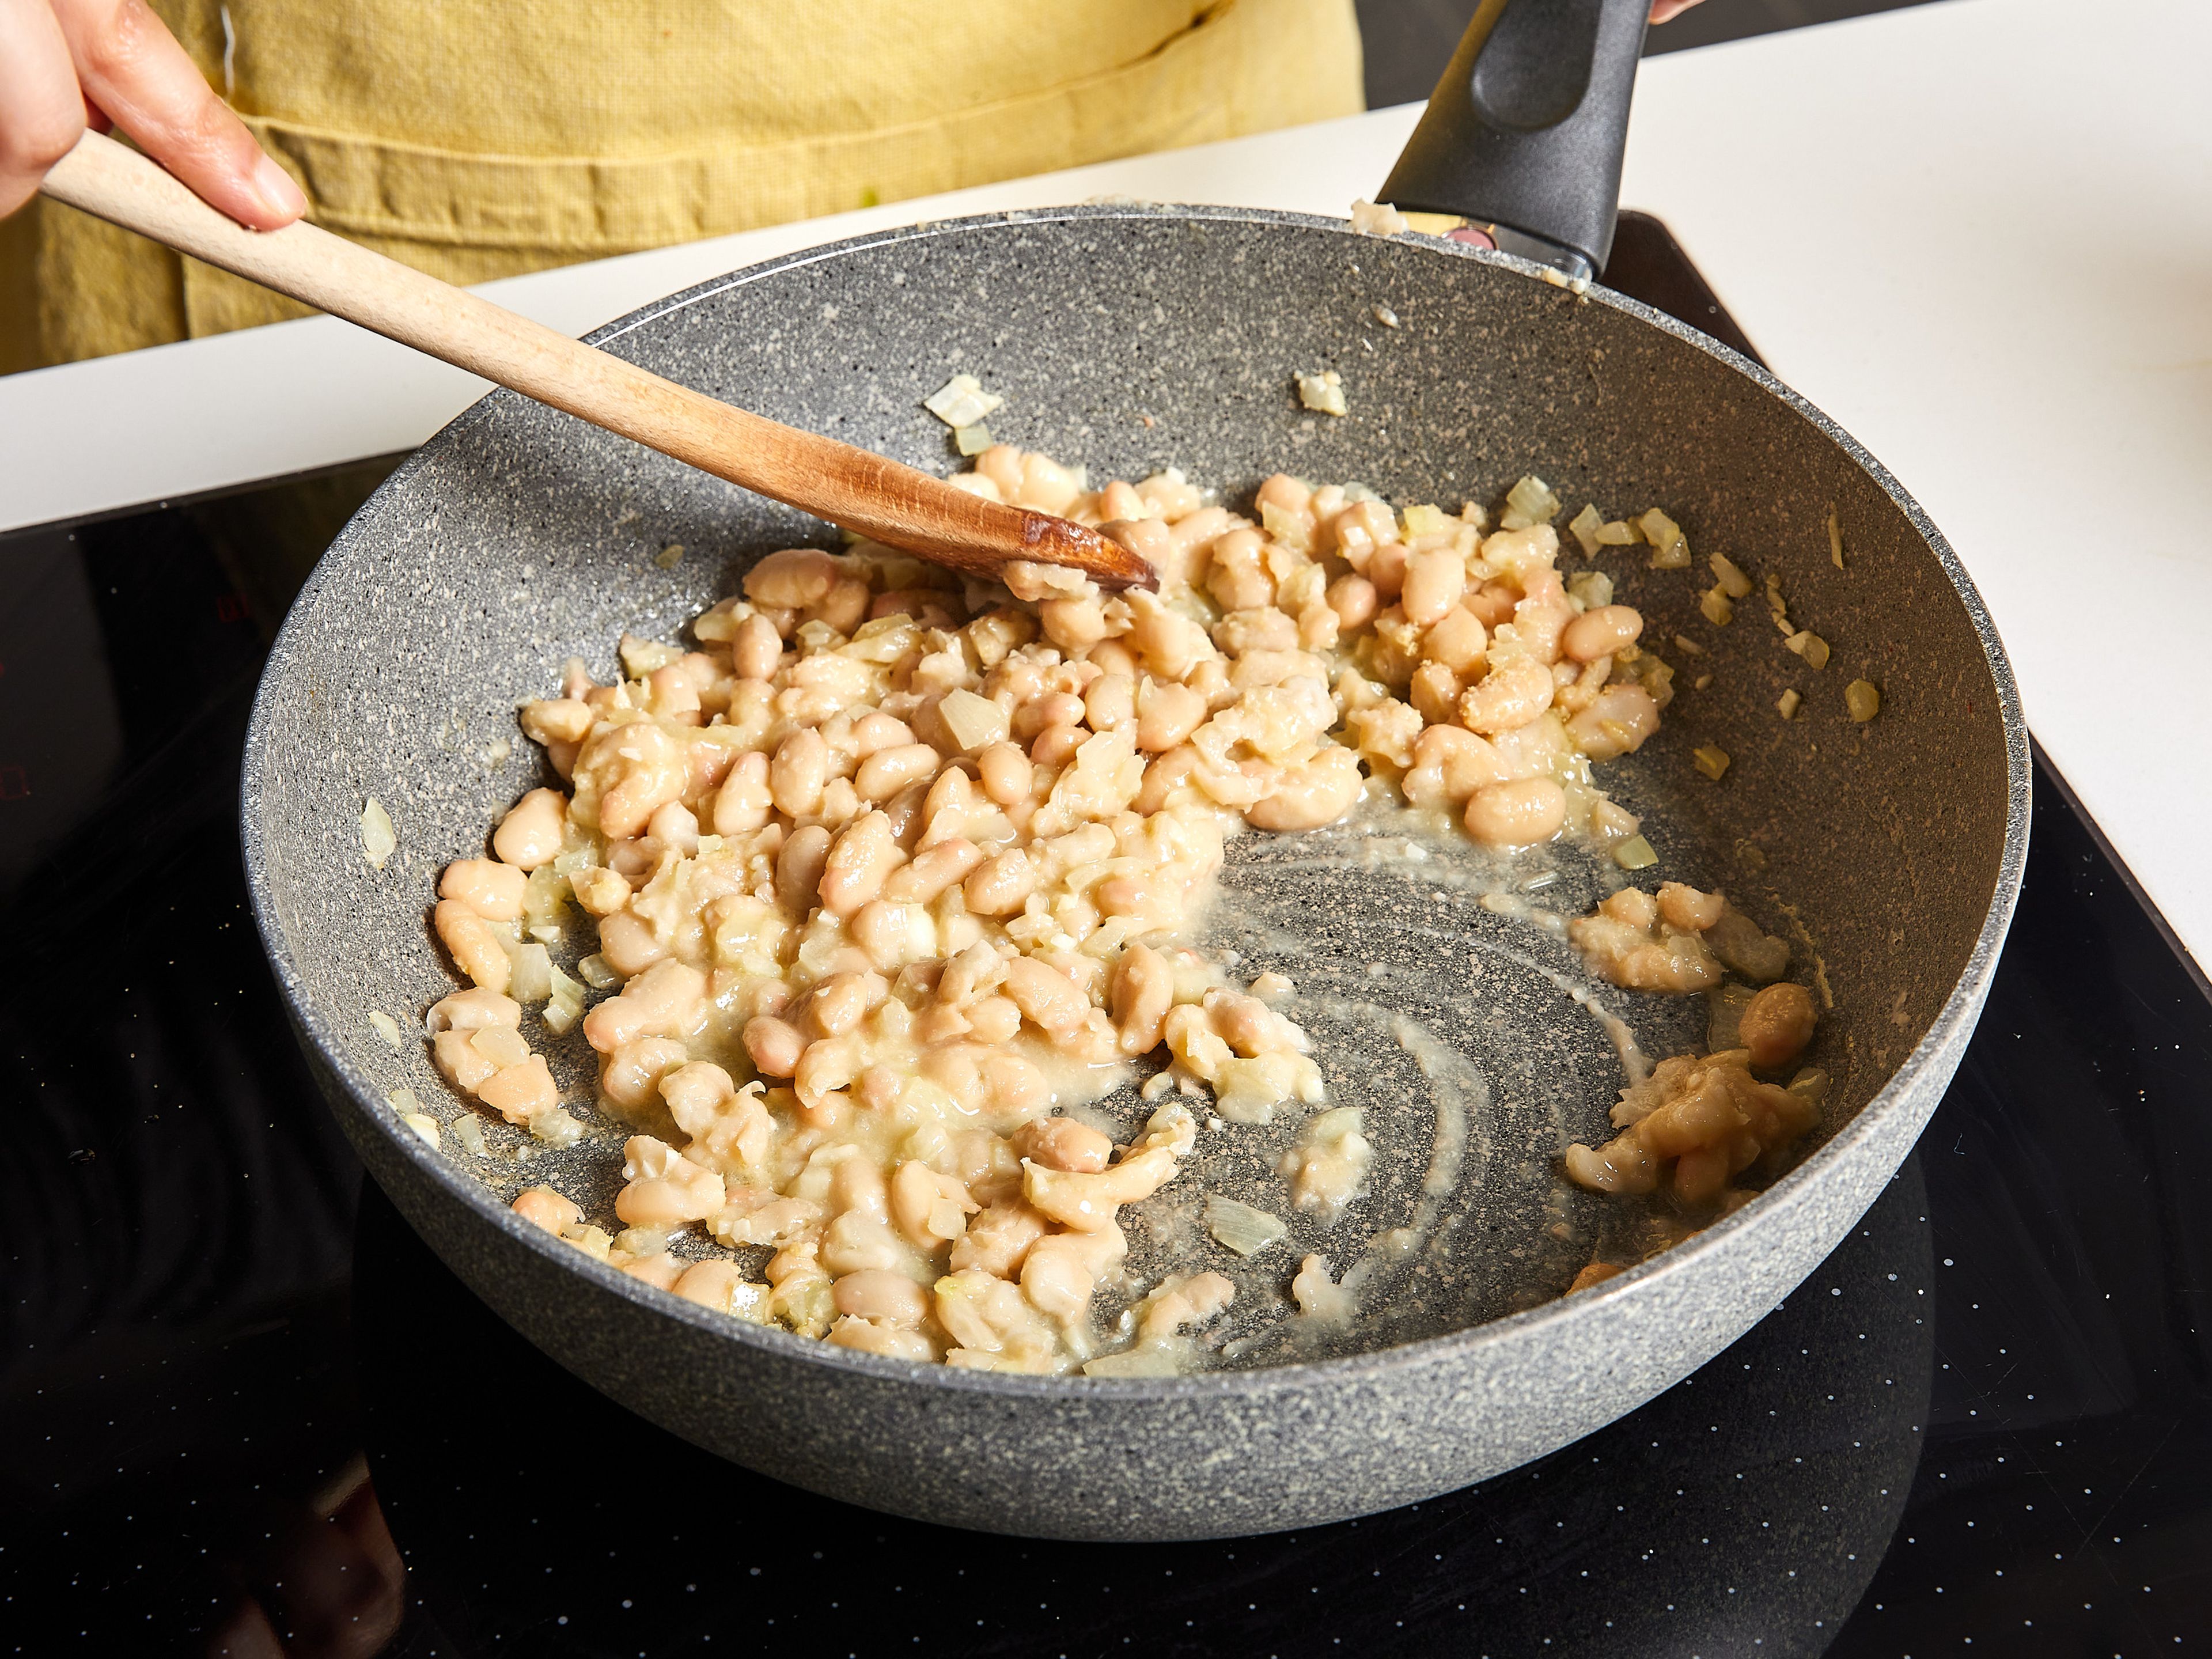 Die Bratpfanne mit etwas Küchenpapier auswischen. Das restliche Olivenöl hinzufügen und bei mittlerer Temperatur erhitzen. Zwiebeln hinzufügen und glasig dünsten. Dann den Knoblauch hinzugeben und kurz anbraten. Weiße Bohnen dazugeben und ca. 3 Min. anbraten. Dann die Hefeflocken und einen Teil des aufbewahrten Nudelwassers hinzufügen. Mit dem Pfannenwender oder einer Gabel die weißen Bohnen zerdrücken. Während des Prozesses weiteres Nudelwasser hinzugeben, bis die Soße cremig ist.